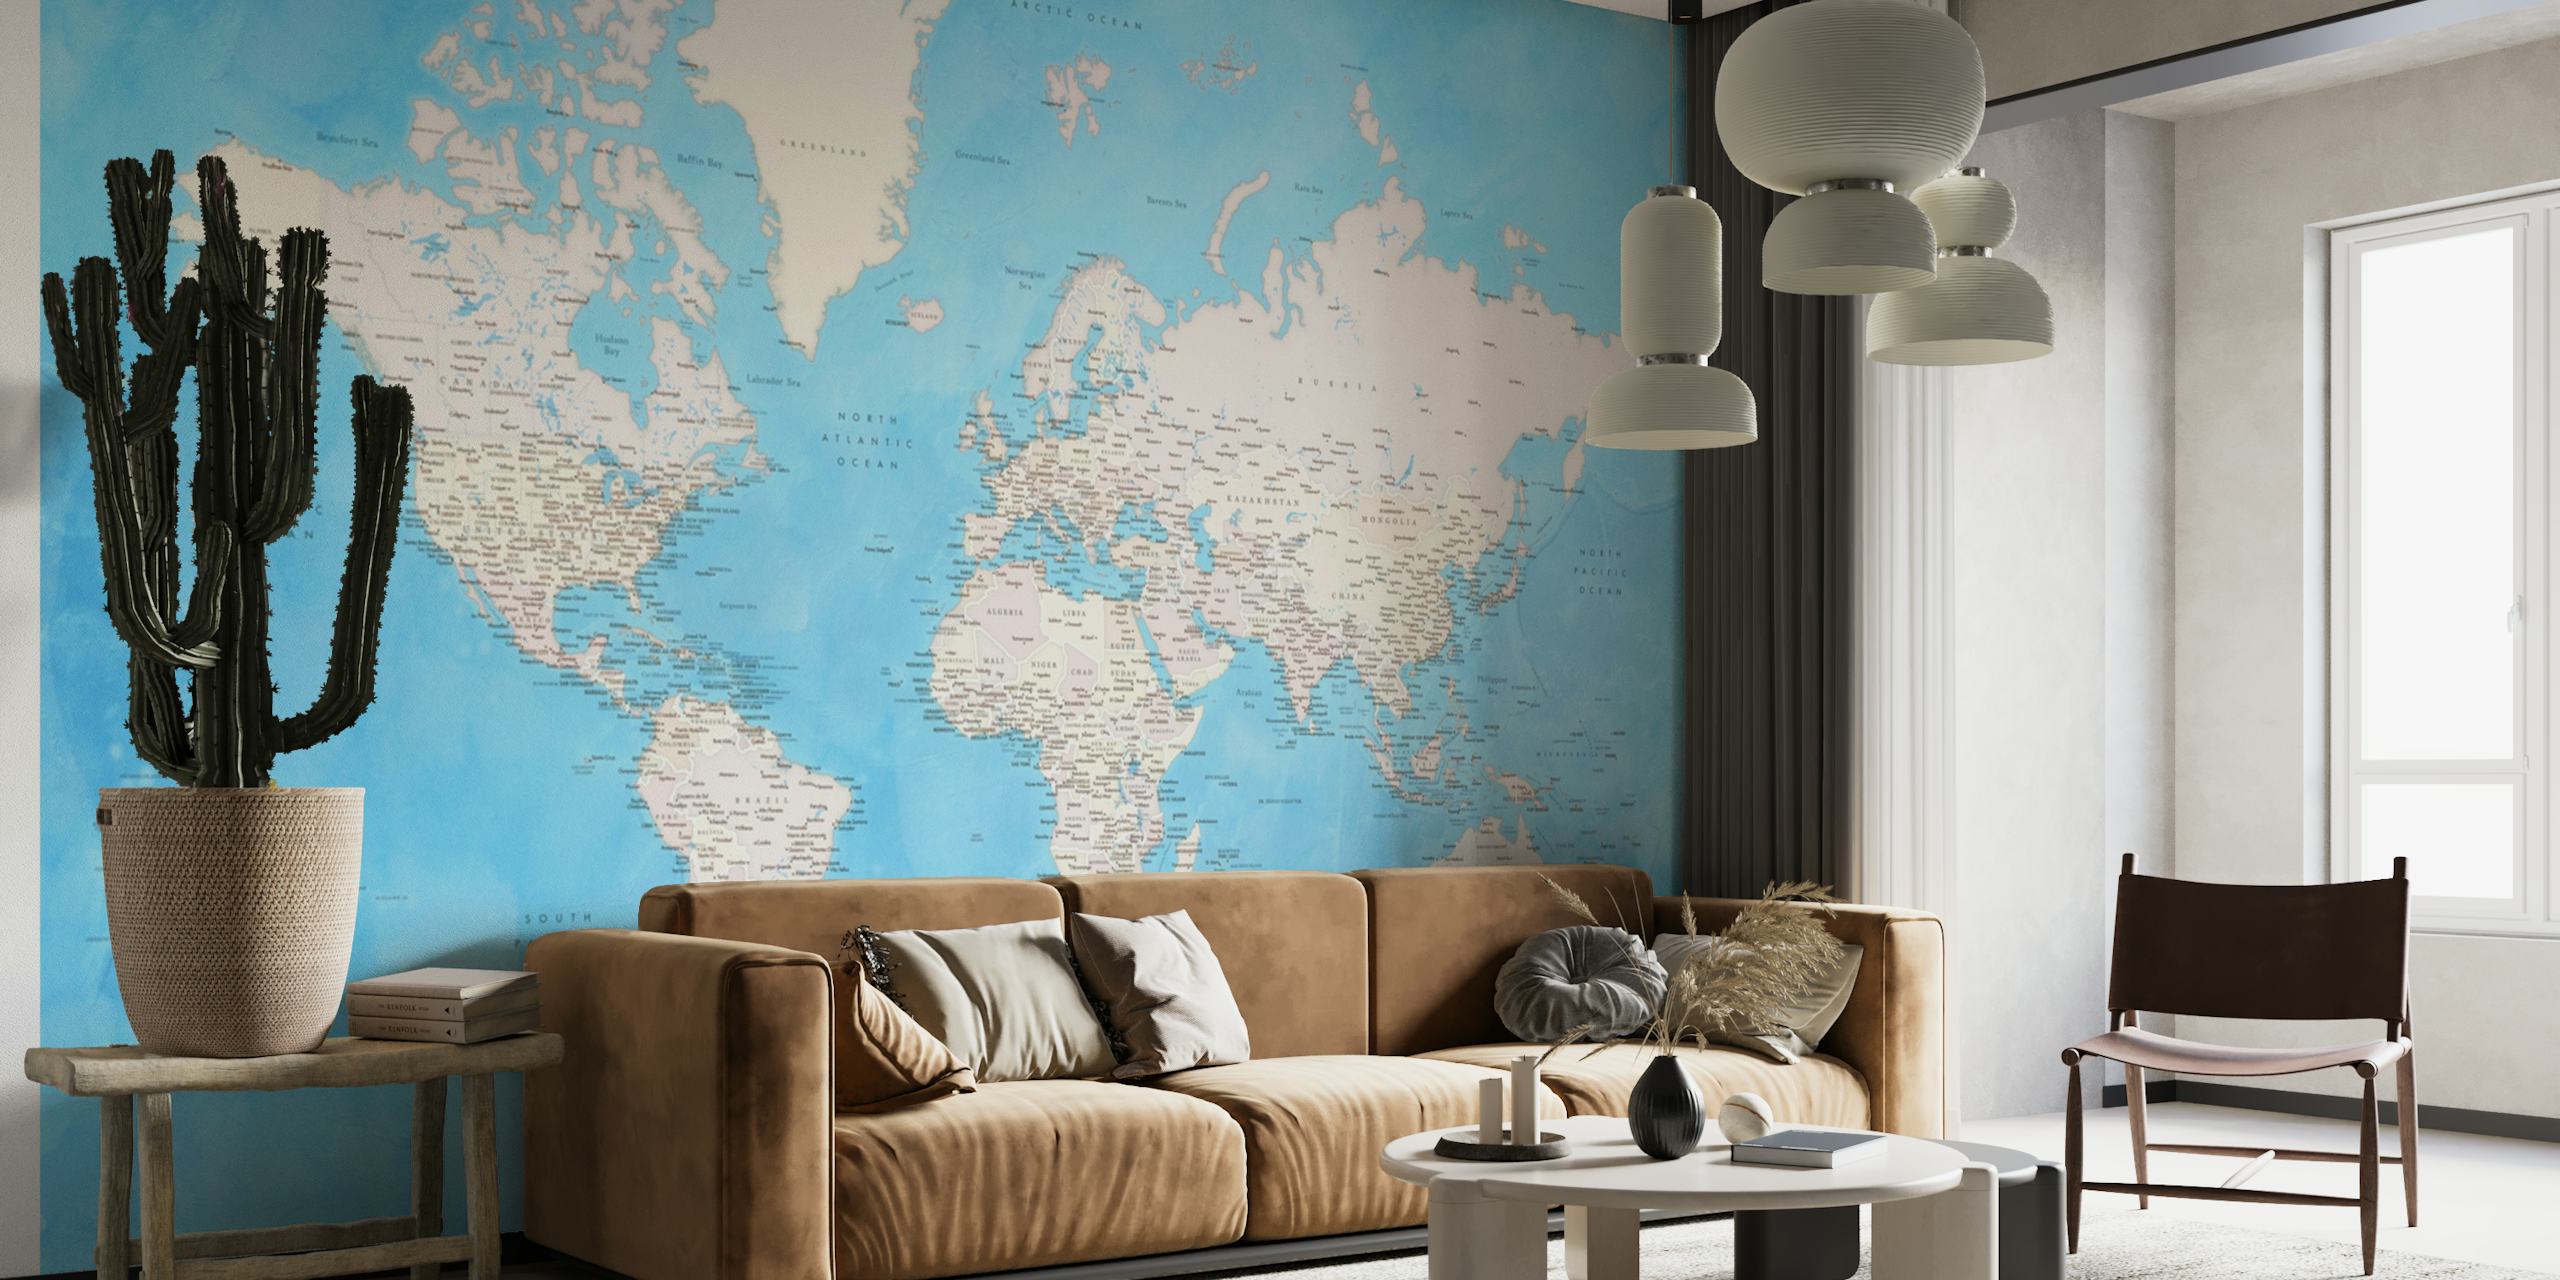 Detailed world map Benning papel pintado